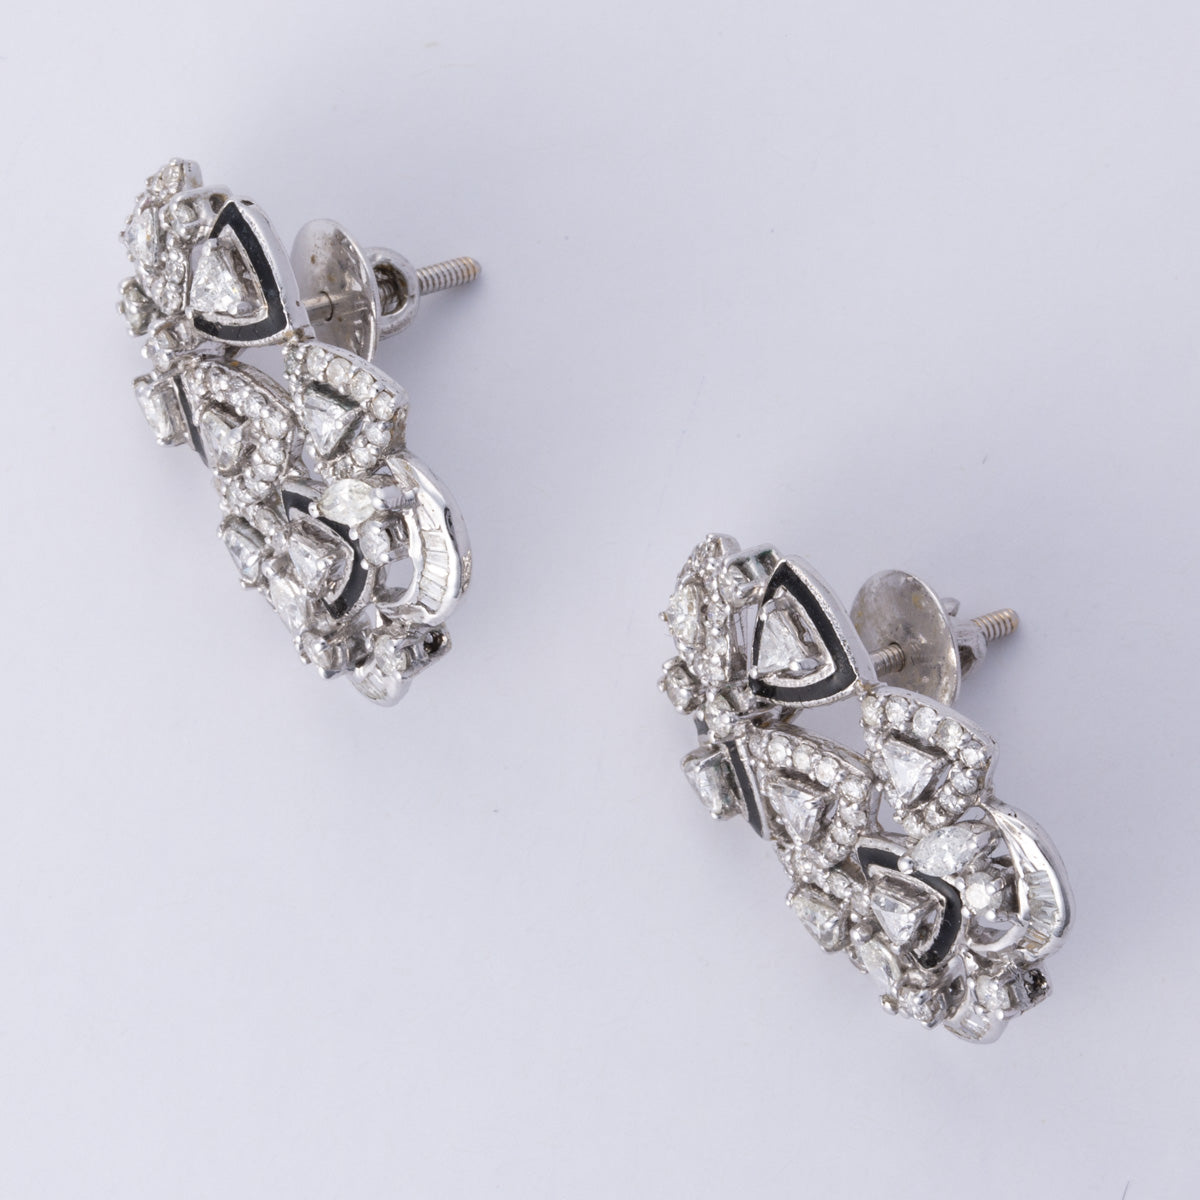 14k White Gold Diamond Earrings | 3.58 ctw